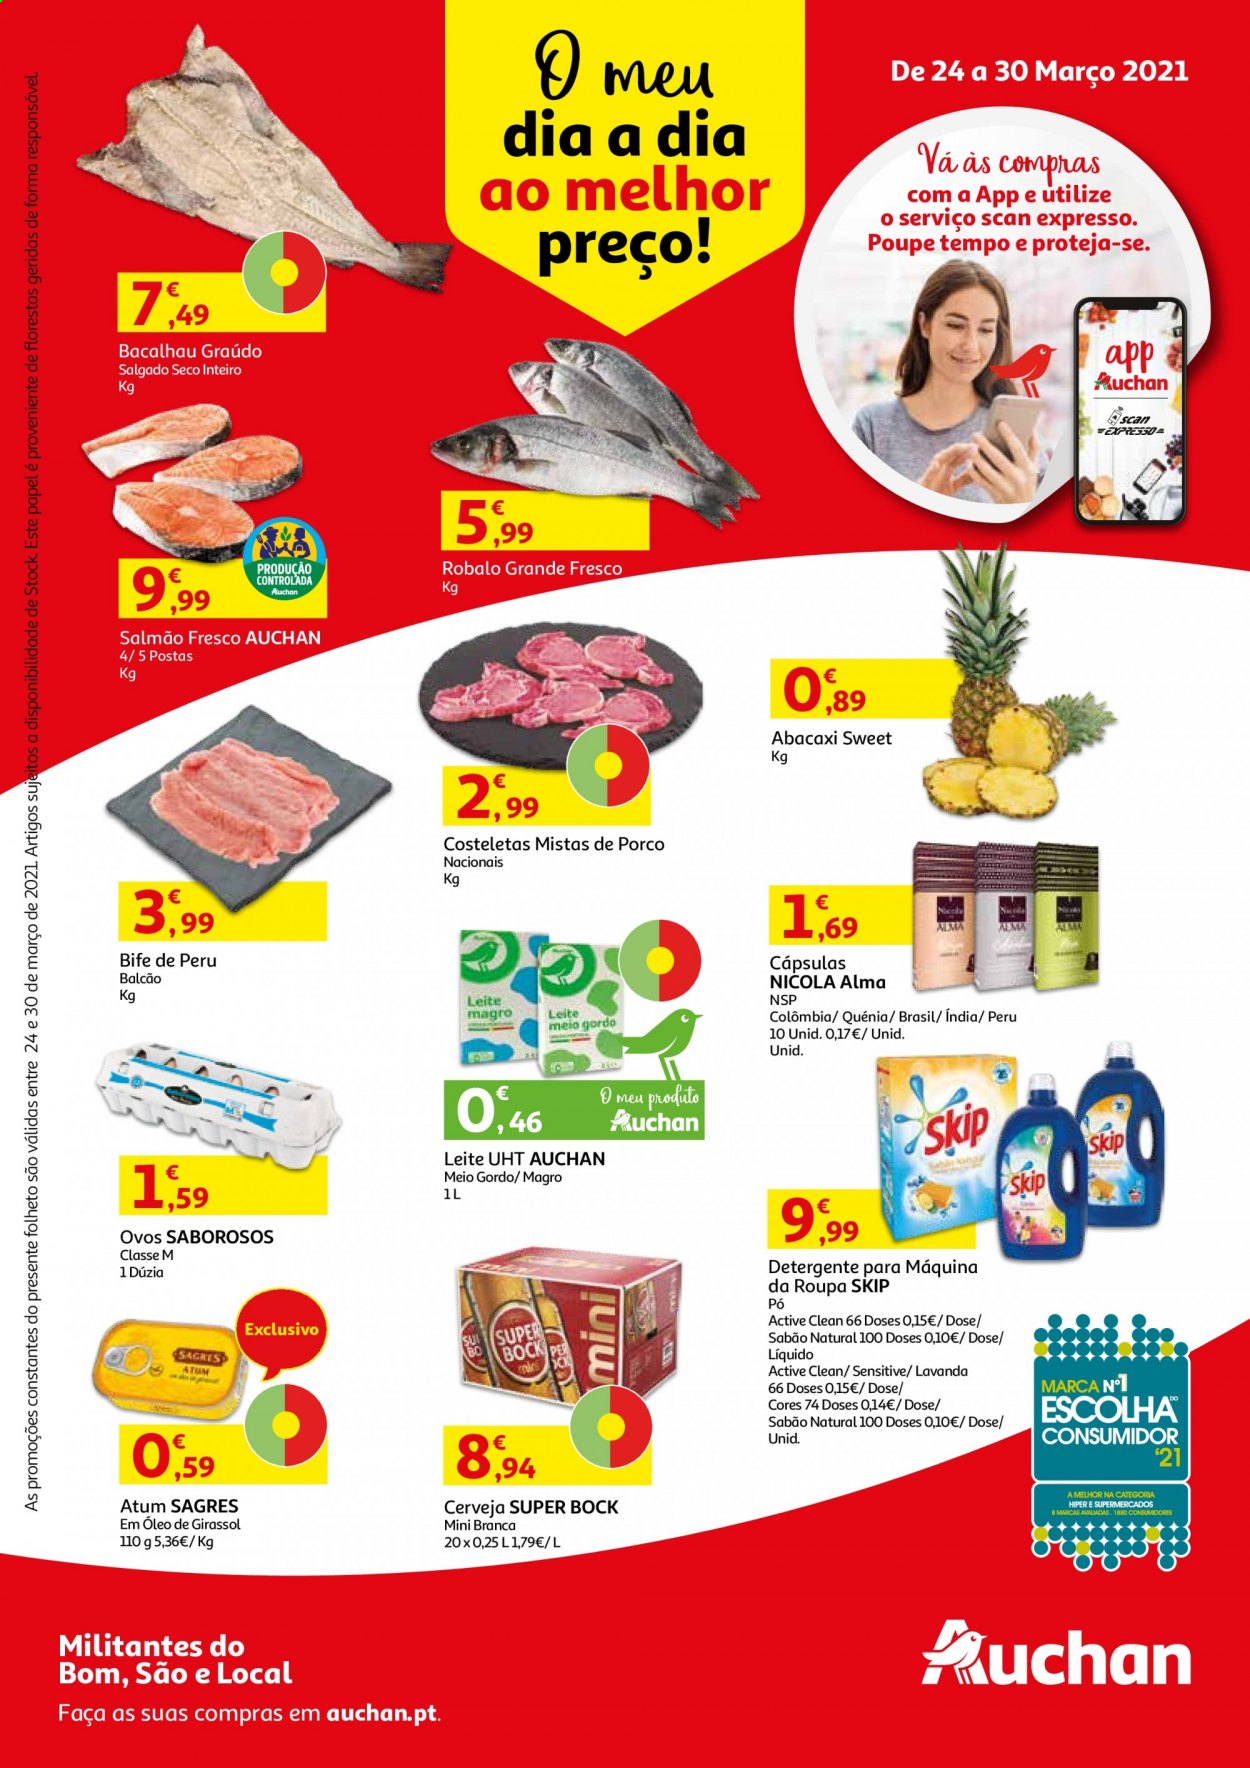 thumbnail - Folheto Auchan - 24.3.2021 - 30.3.2021 - Produtos em promoção - Sagres, Super Bock, abacaxi, bife, perú, salmão, bacalhau, atum, leite, ovos, Nicola, detergente, sabão. Página 1.